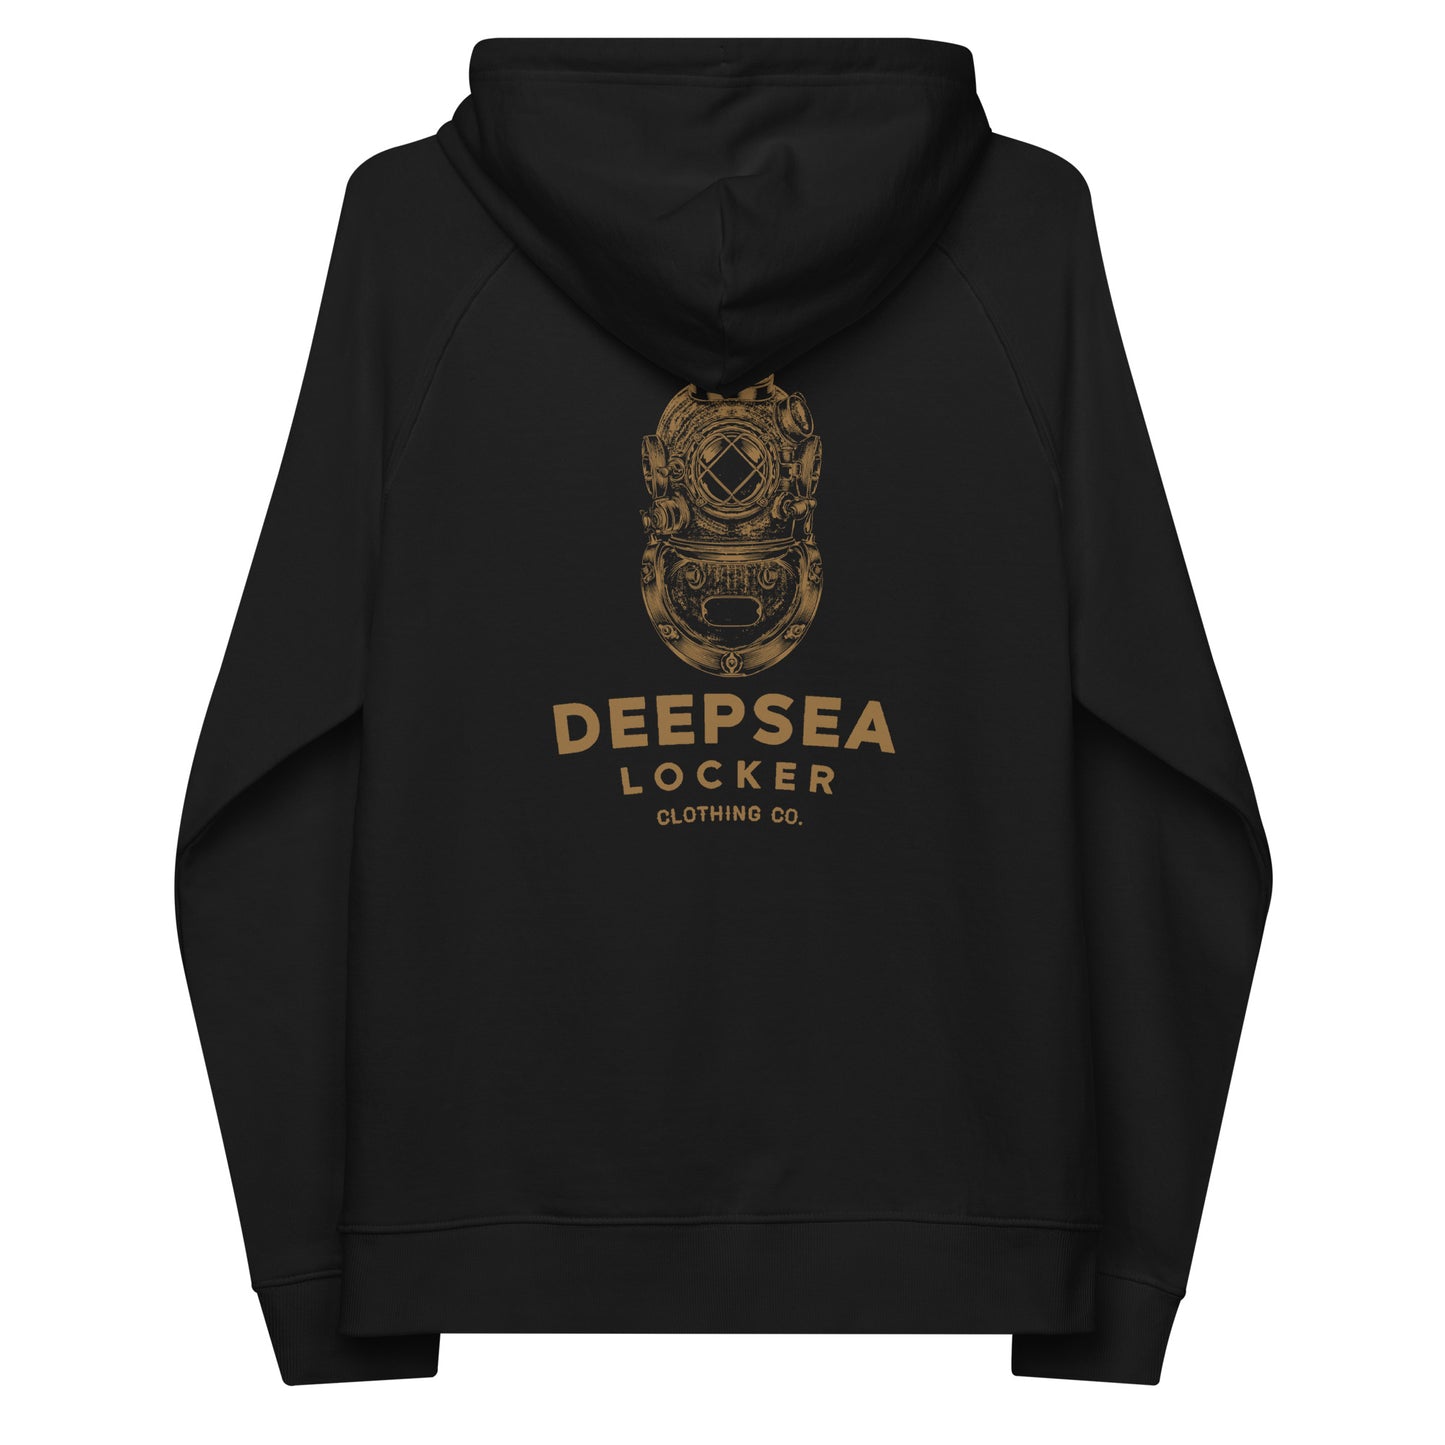 DEEPSEA Locker / Made Under Pressure / Eco Raglan hoodie